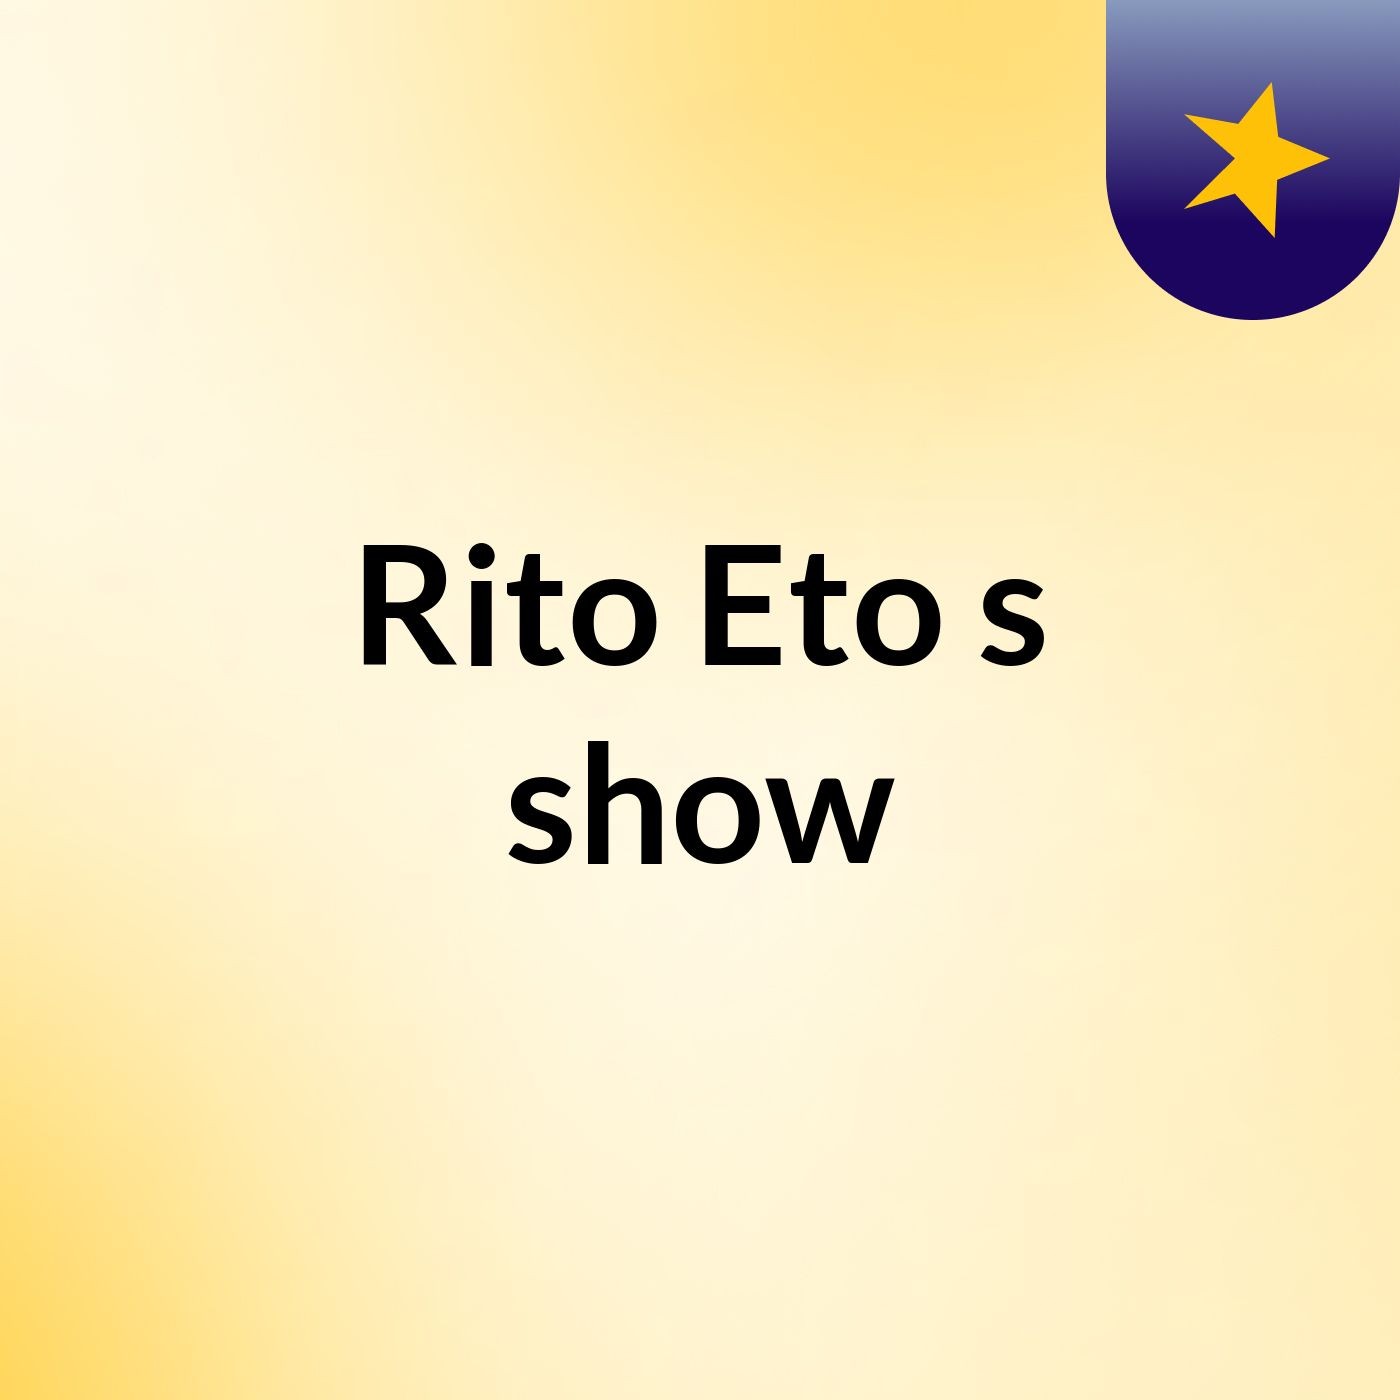 Rito Eto's show